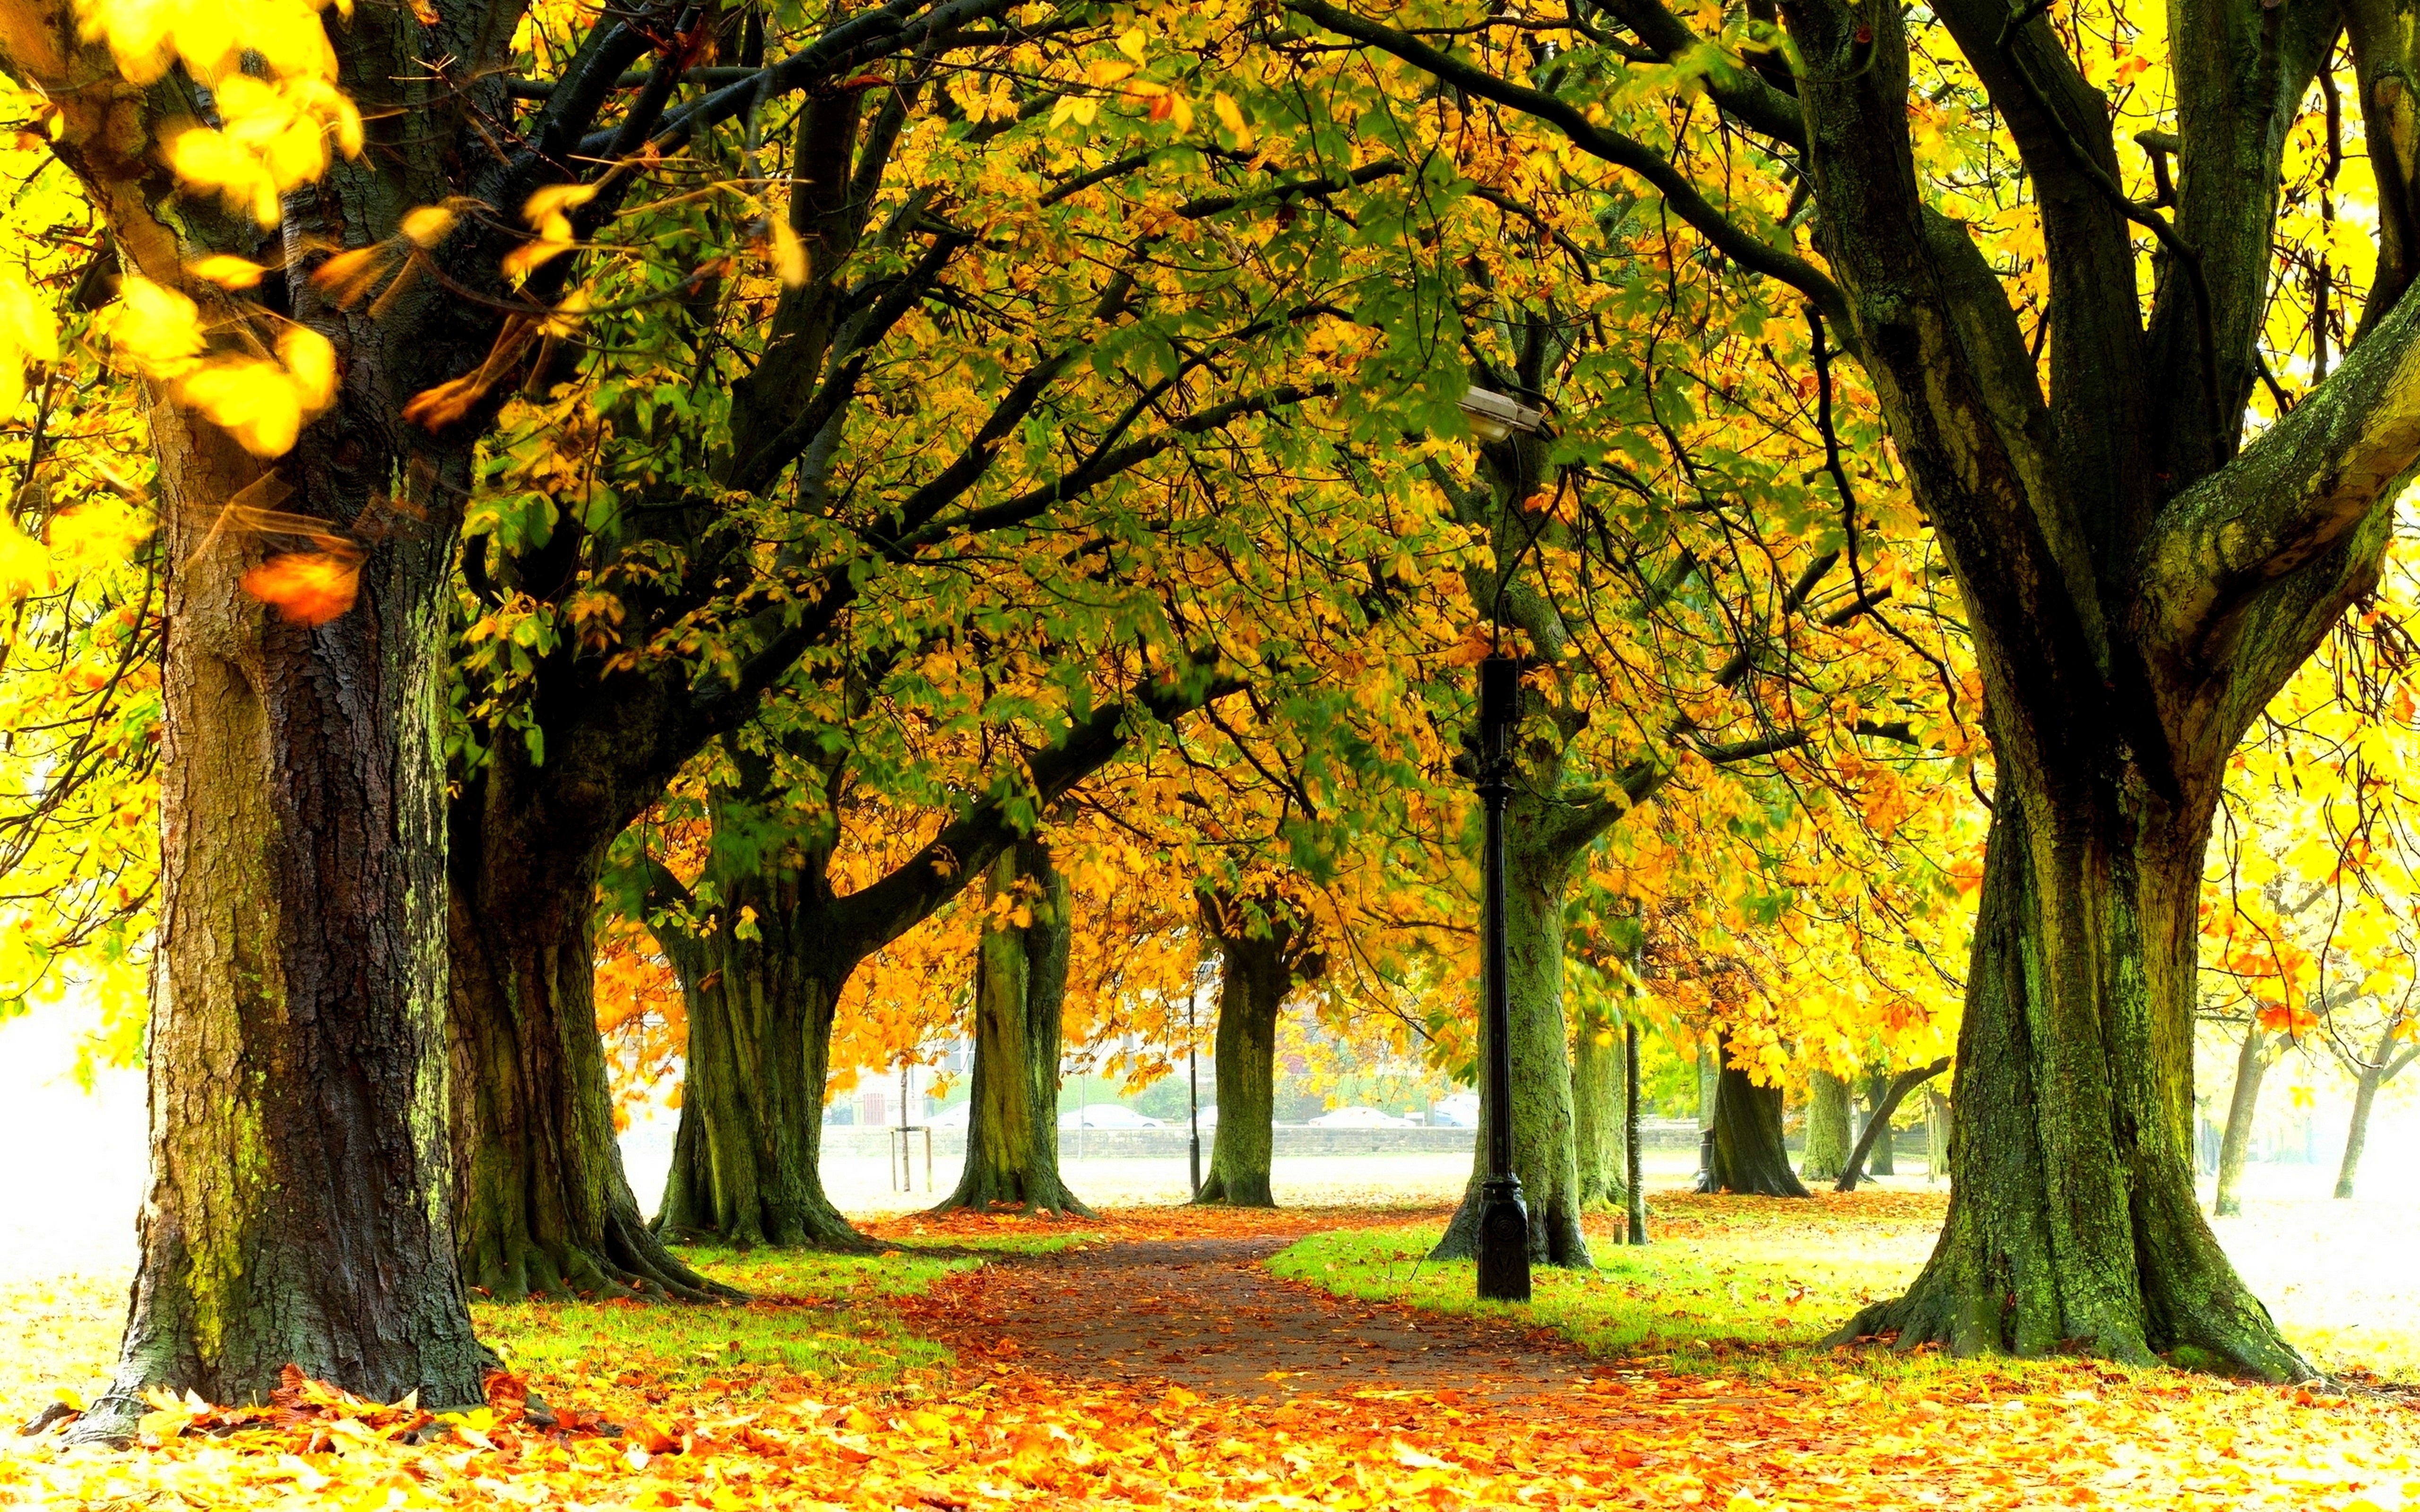 Park, Drzewa, Jesień, Alejka